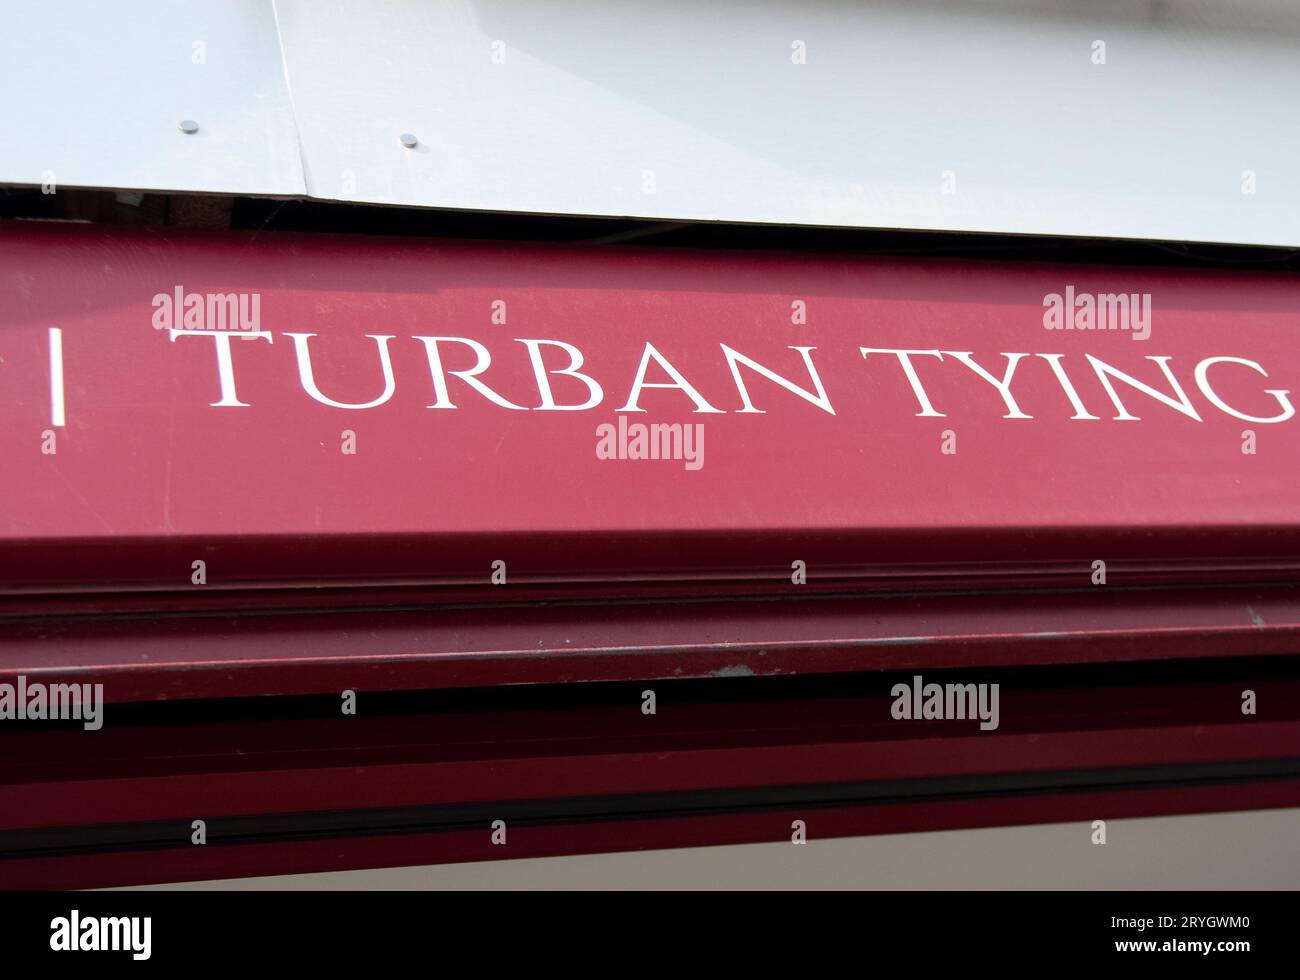 Negozio che offre legature Turban per occasioni speciali, Southall, Londra, Regno Unito. In occasioni speciali, i sikh hanno i loro turbanti adattati professionalmente Foto Stock